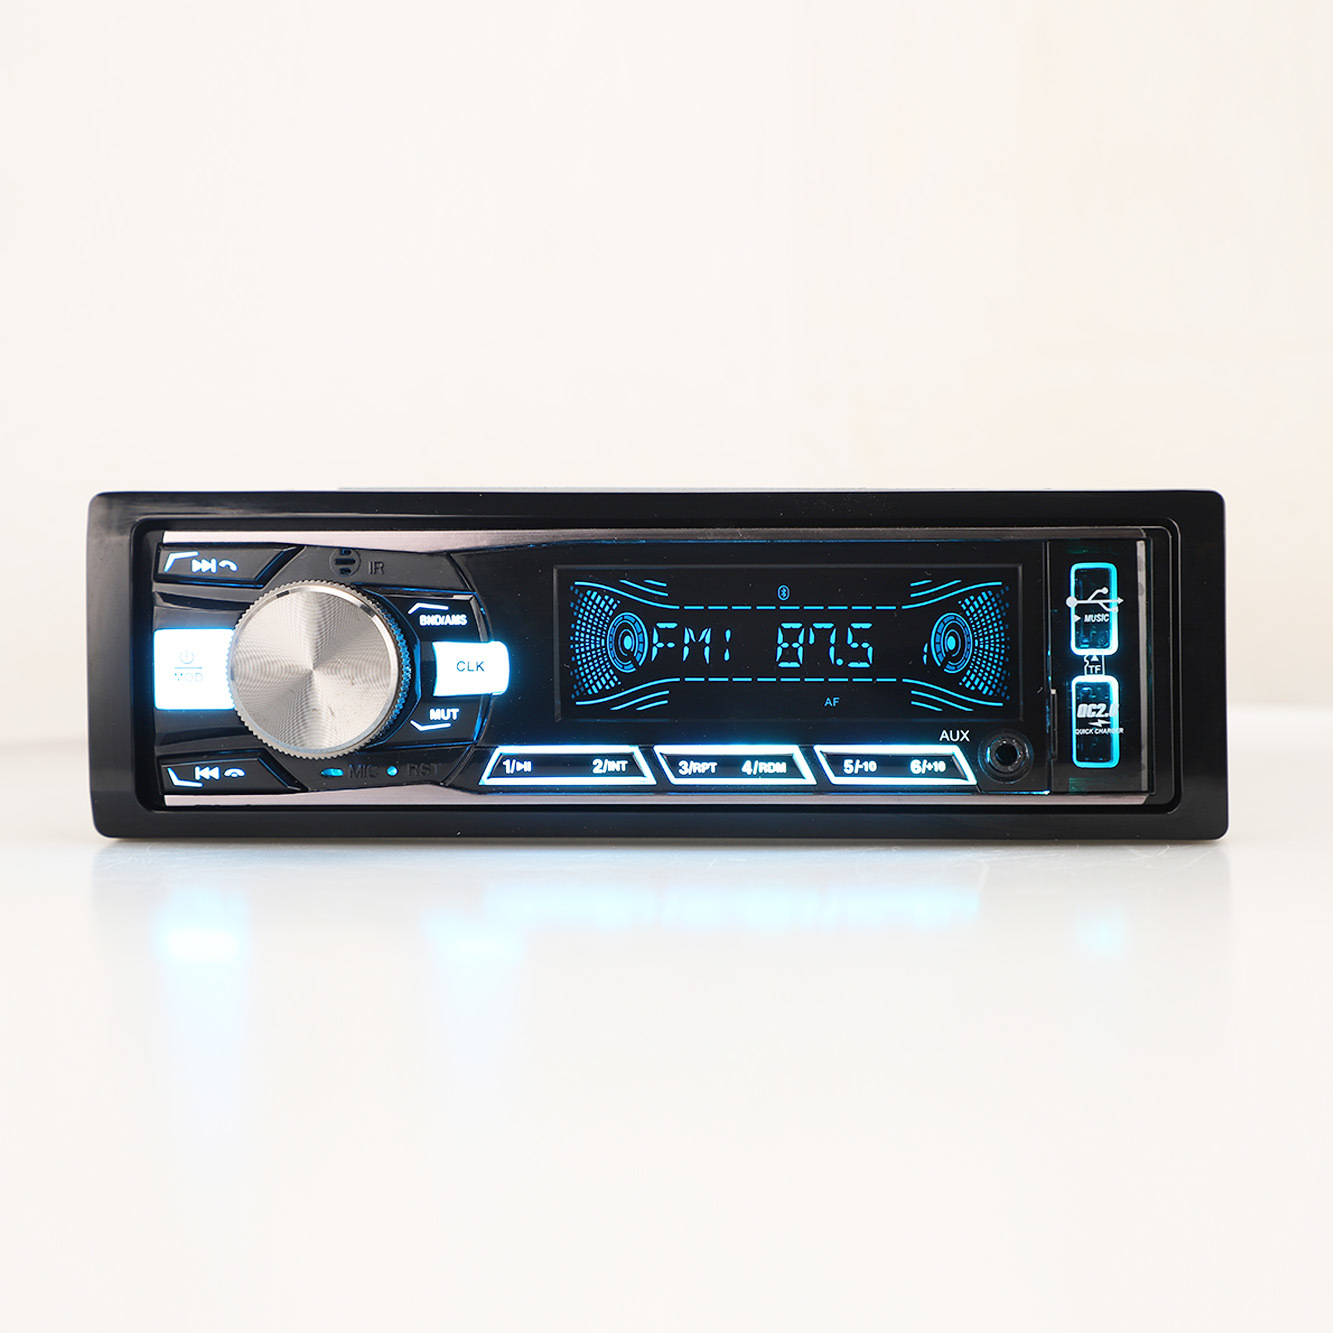 السيارات الصوت لوحة ثابتة مشغل MP3 FM الارسال الصوت سيارة ستيريو صوت السيارة اكسسوارات السيارات مشغل سيارة واحد DIN